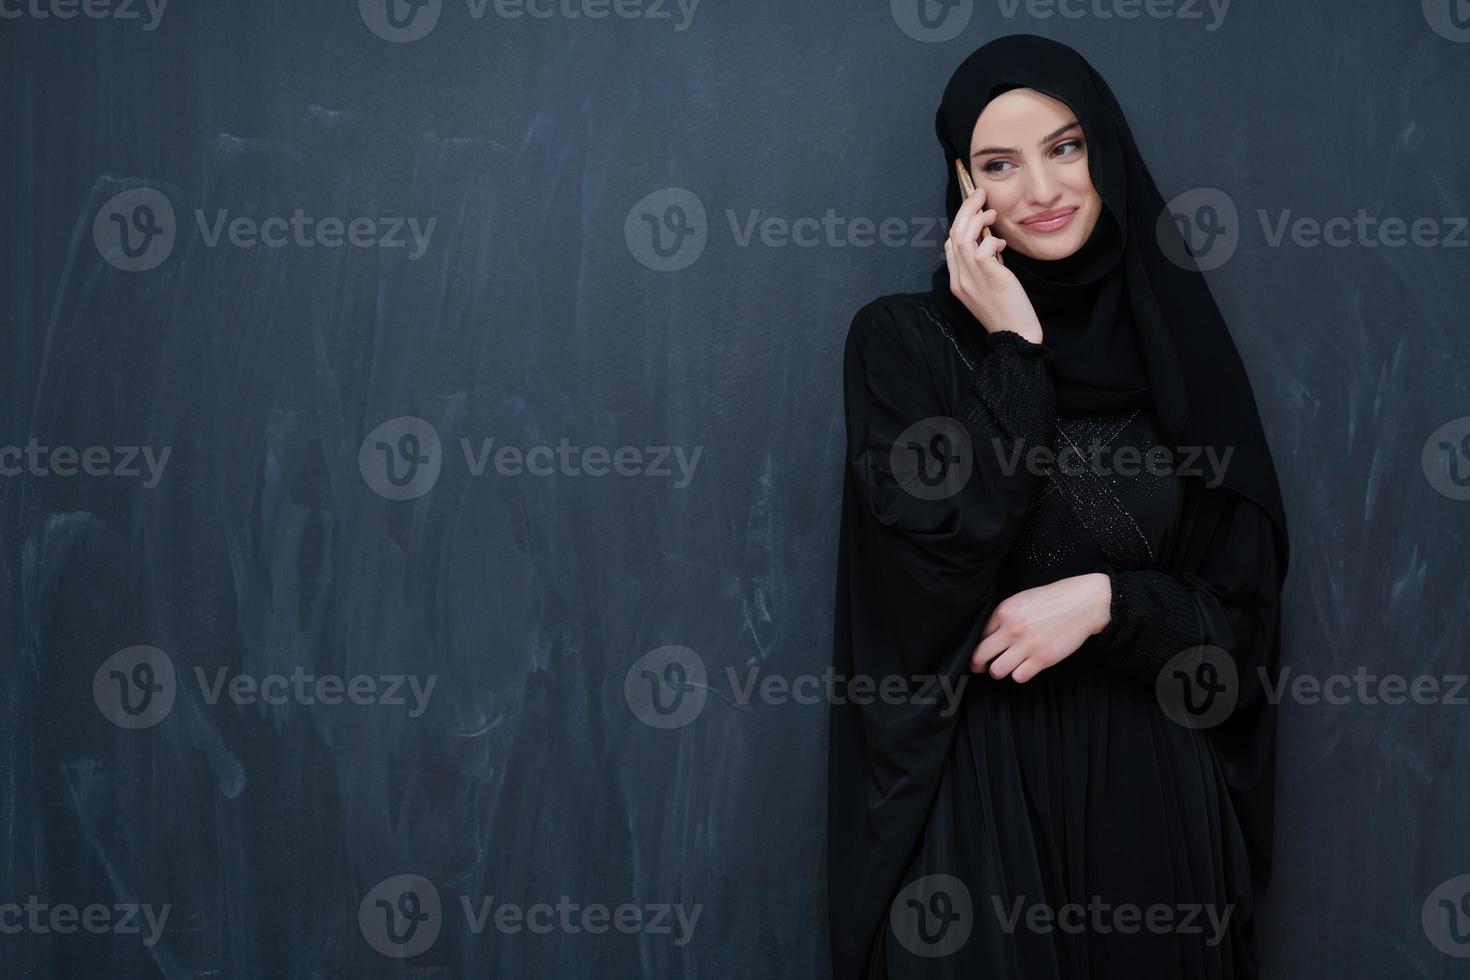 giovane musulmano donna d'affari nel tradizionale Abiti o abaya utilizzando smartphone foto